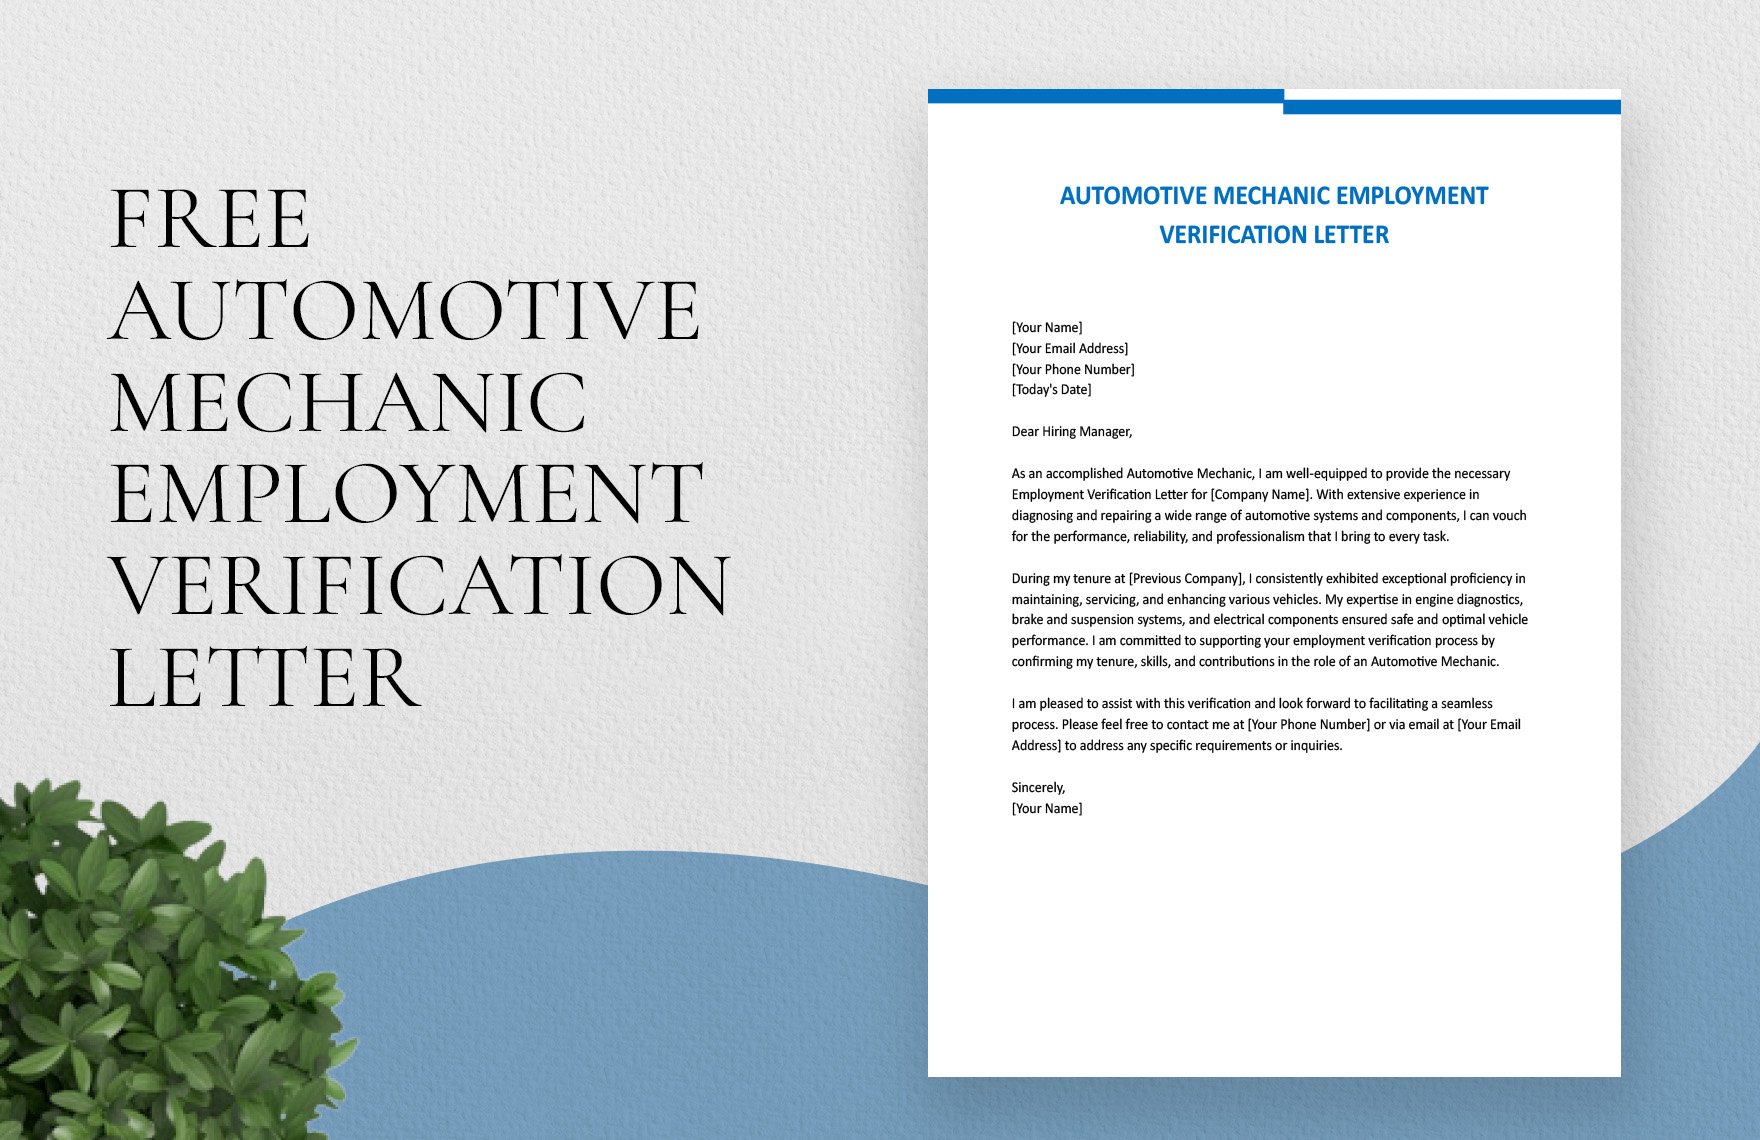 Automotive Mechanic Employment Verification Letter